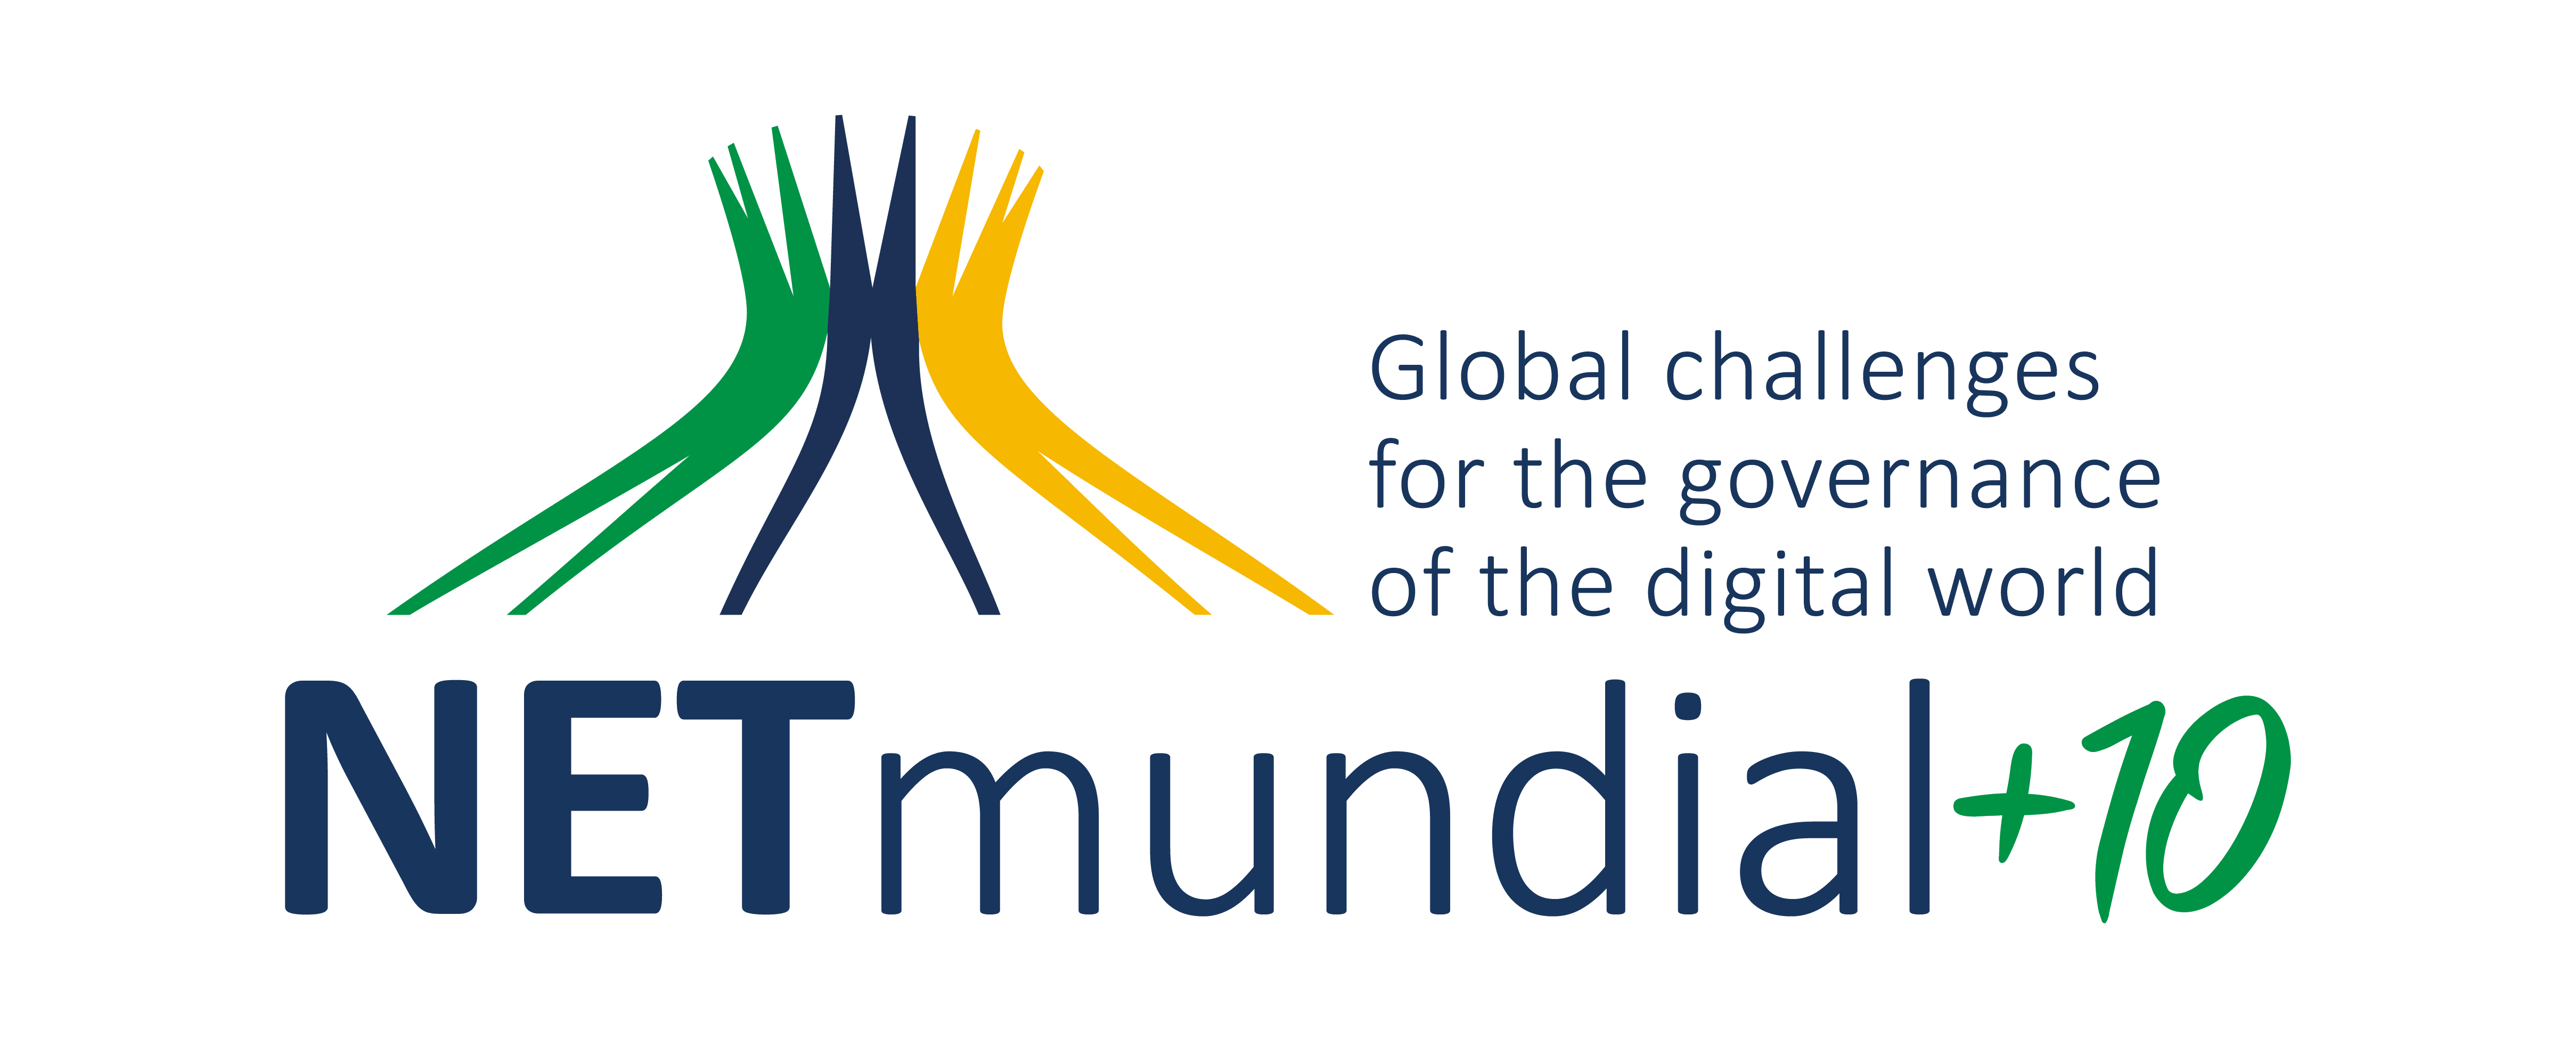 NETmundial+10 Logo